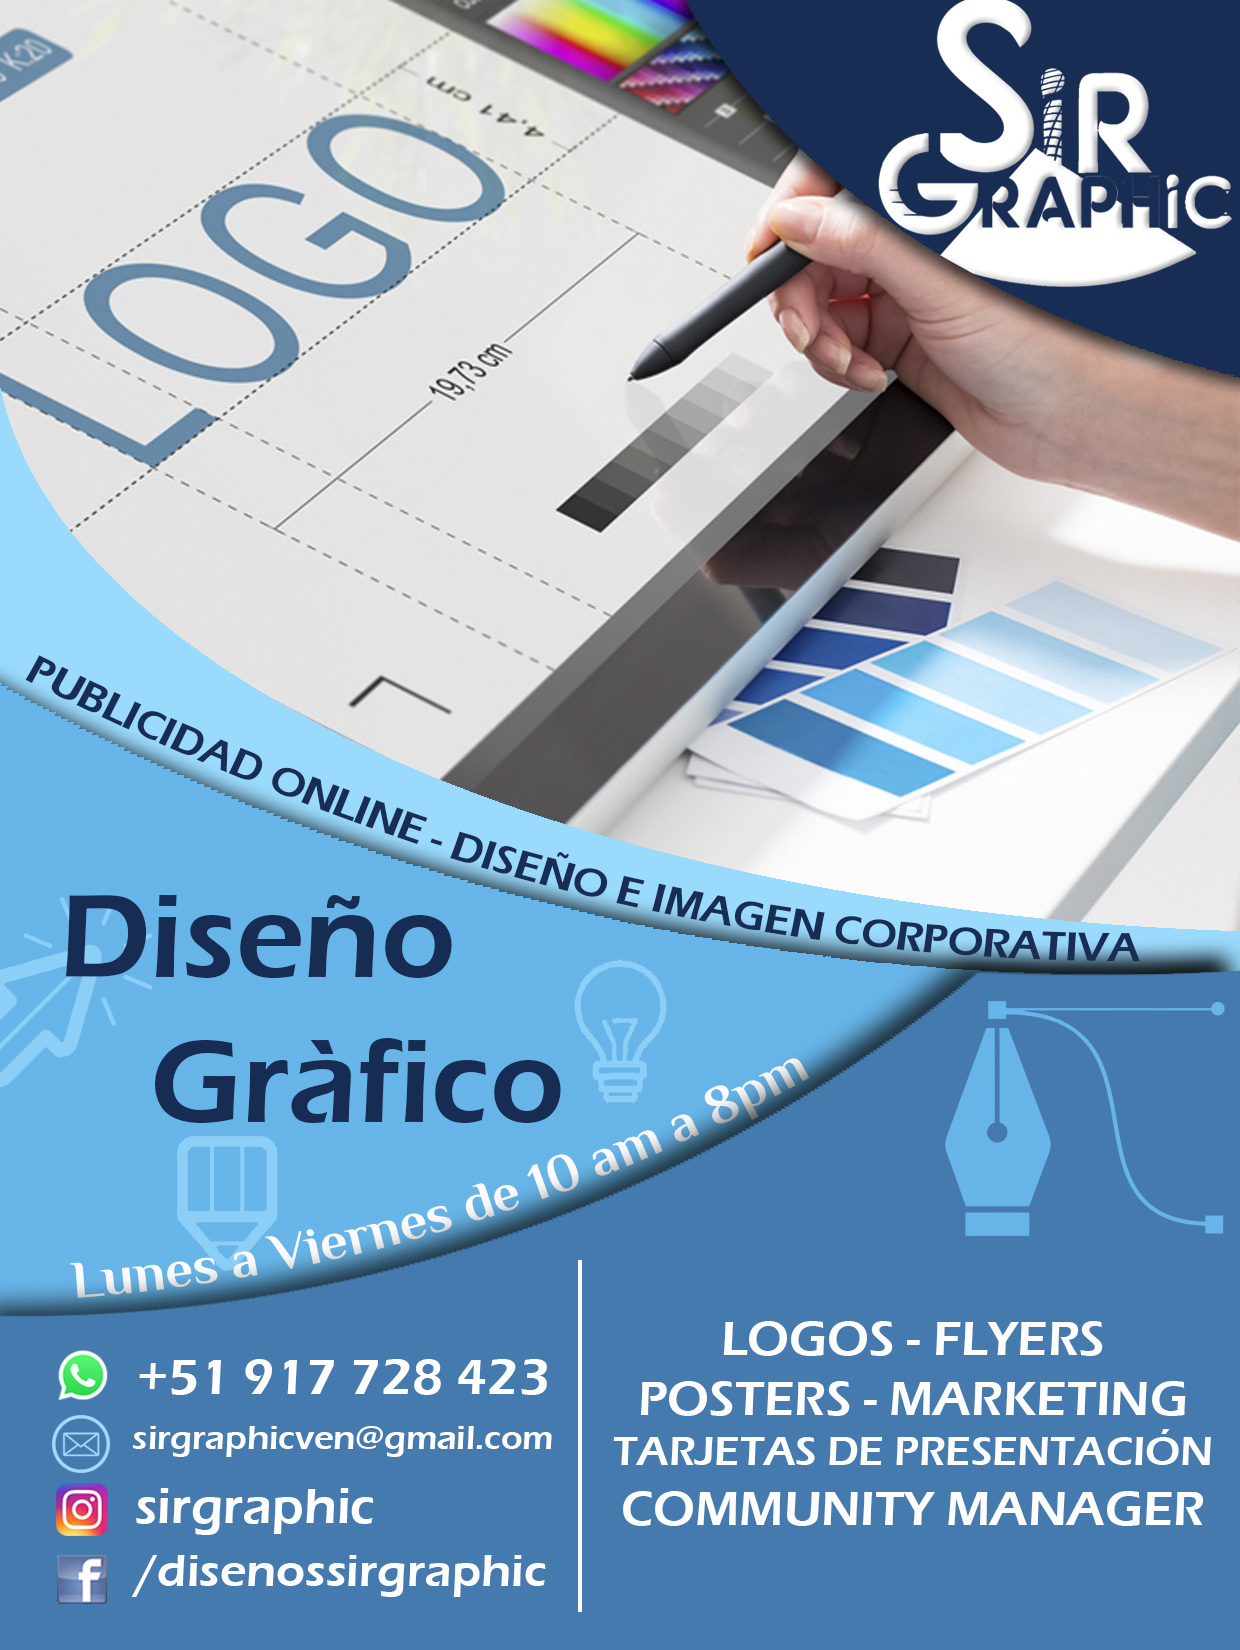 Flyers - Logos - Posters - Diseño Gráfico - Imagen corporativa